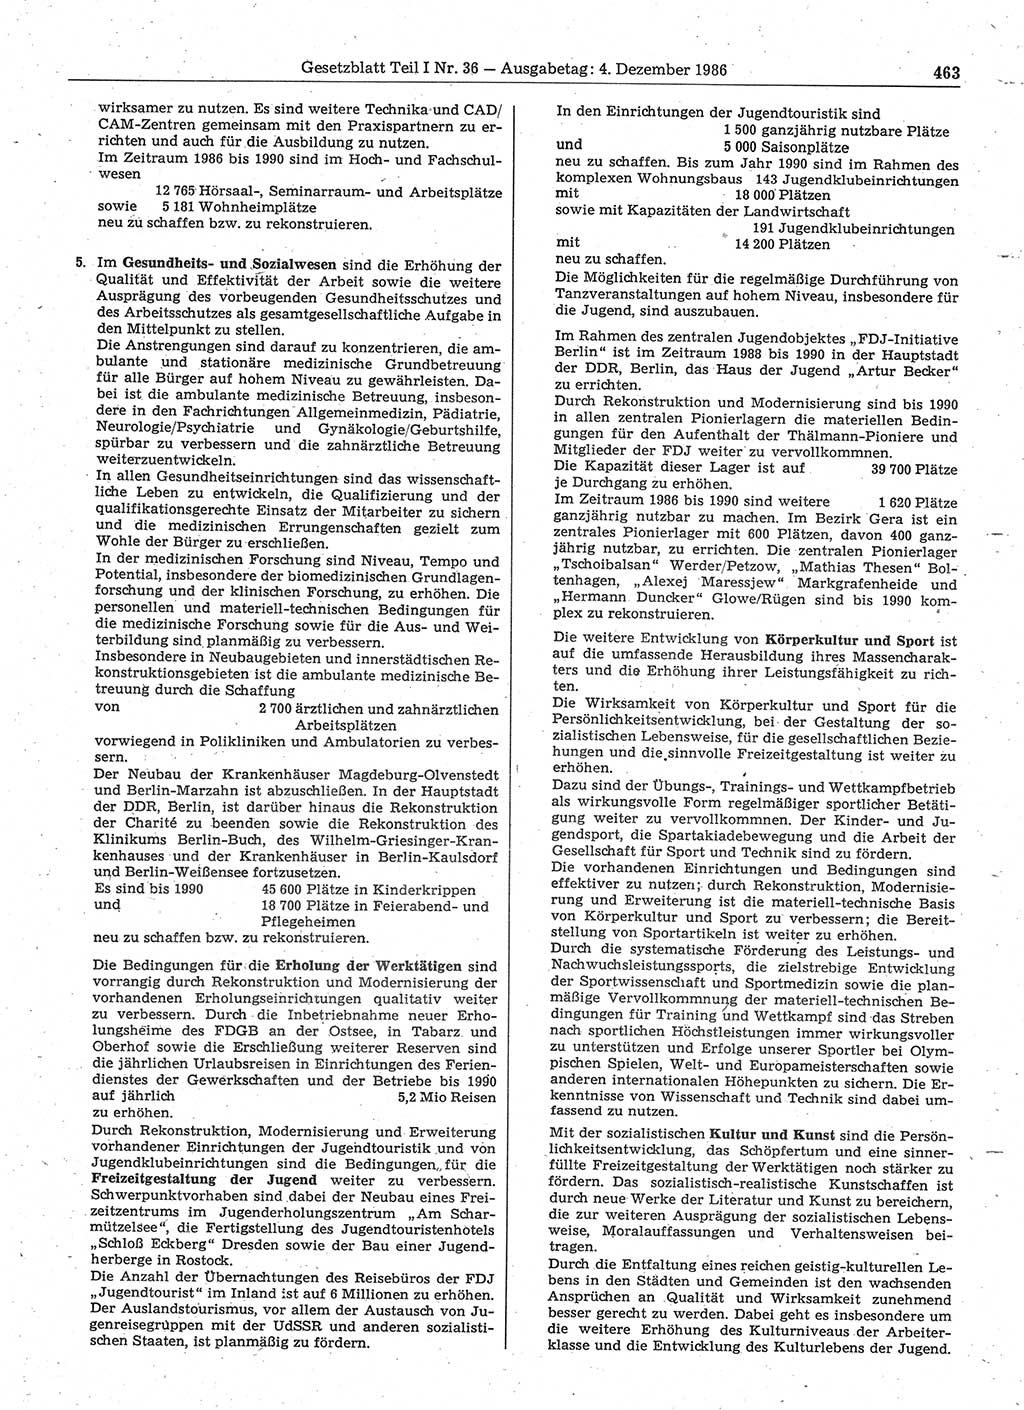 Gesetzblatt (GBl.) der Deutschen Demokratischen Republik (DDR) Teil Ⅰ 1986, Seite 463 (GBl. DDR Ⅰ 1986, S. 463)